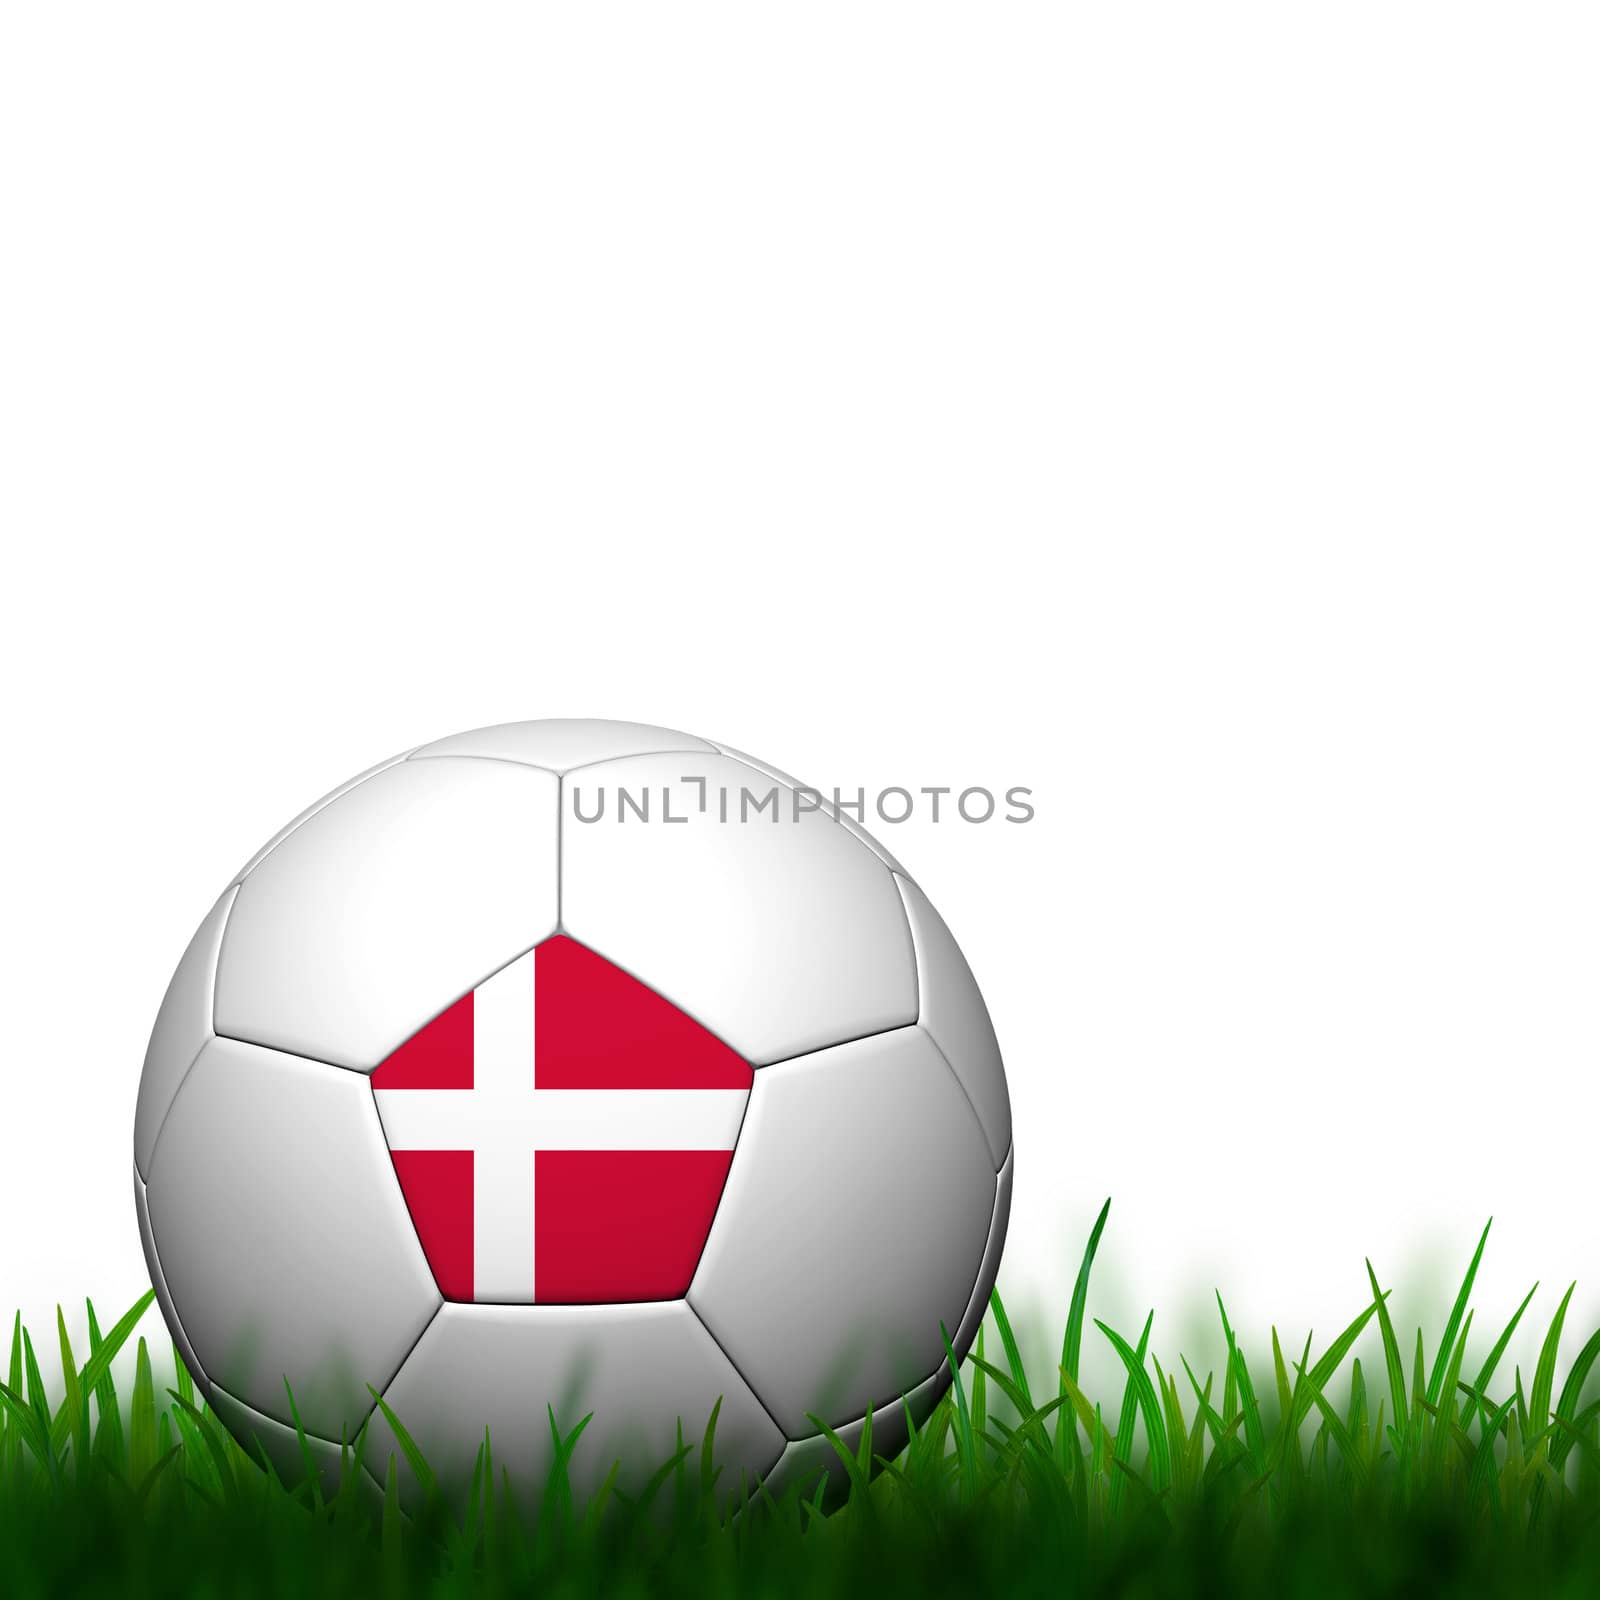 3D Football Denmark Flag Patter in green grass on white background